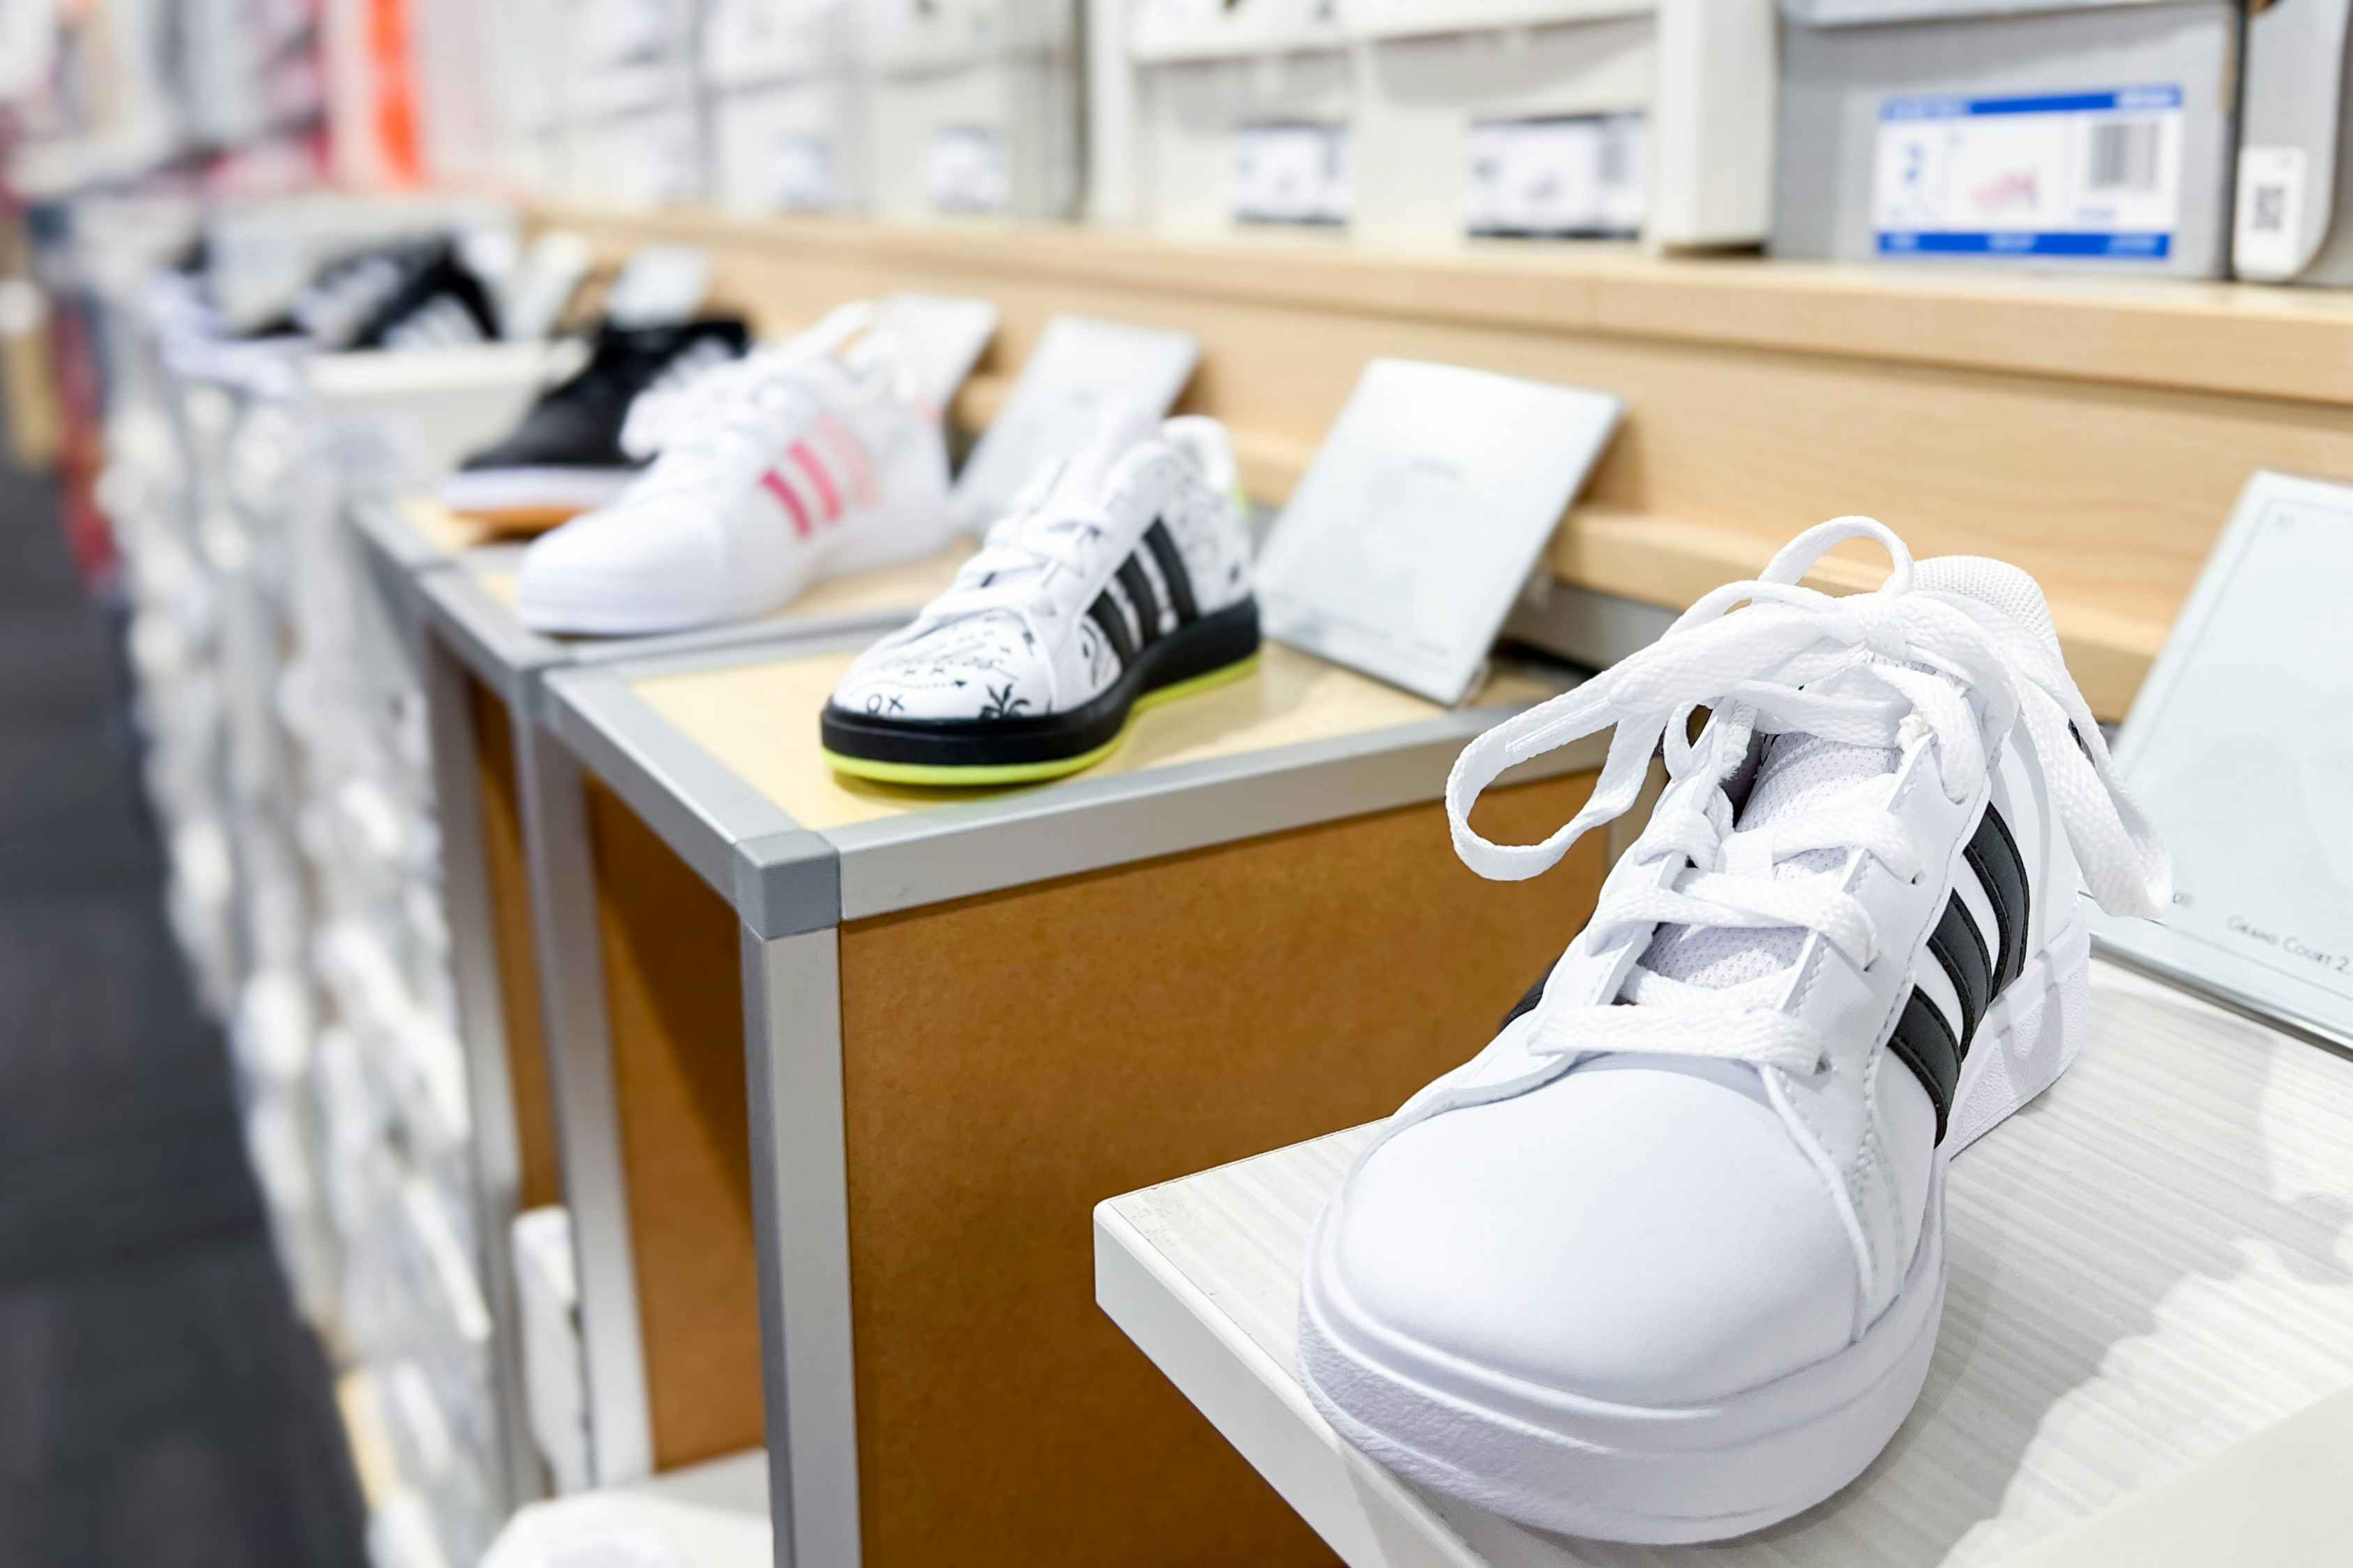 Huge Savings on Adidas Footwear: Get $14 Slides, $30 Sneakers, and More